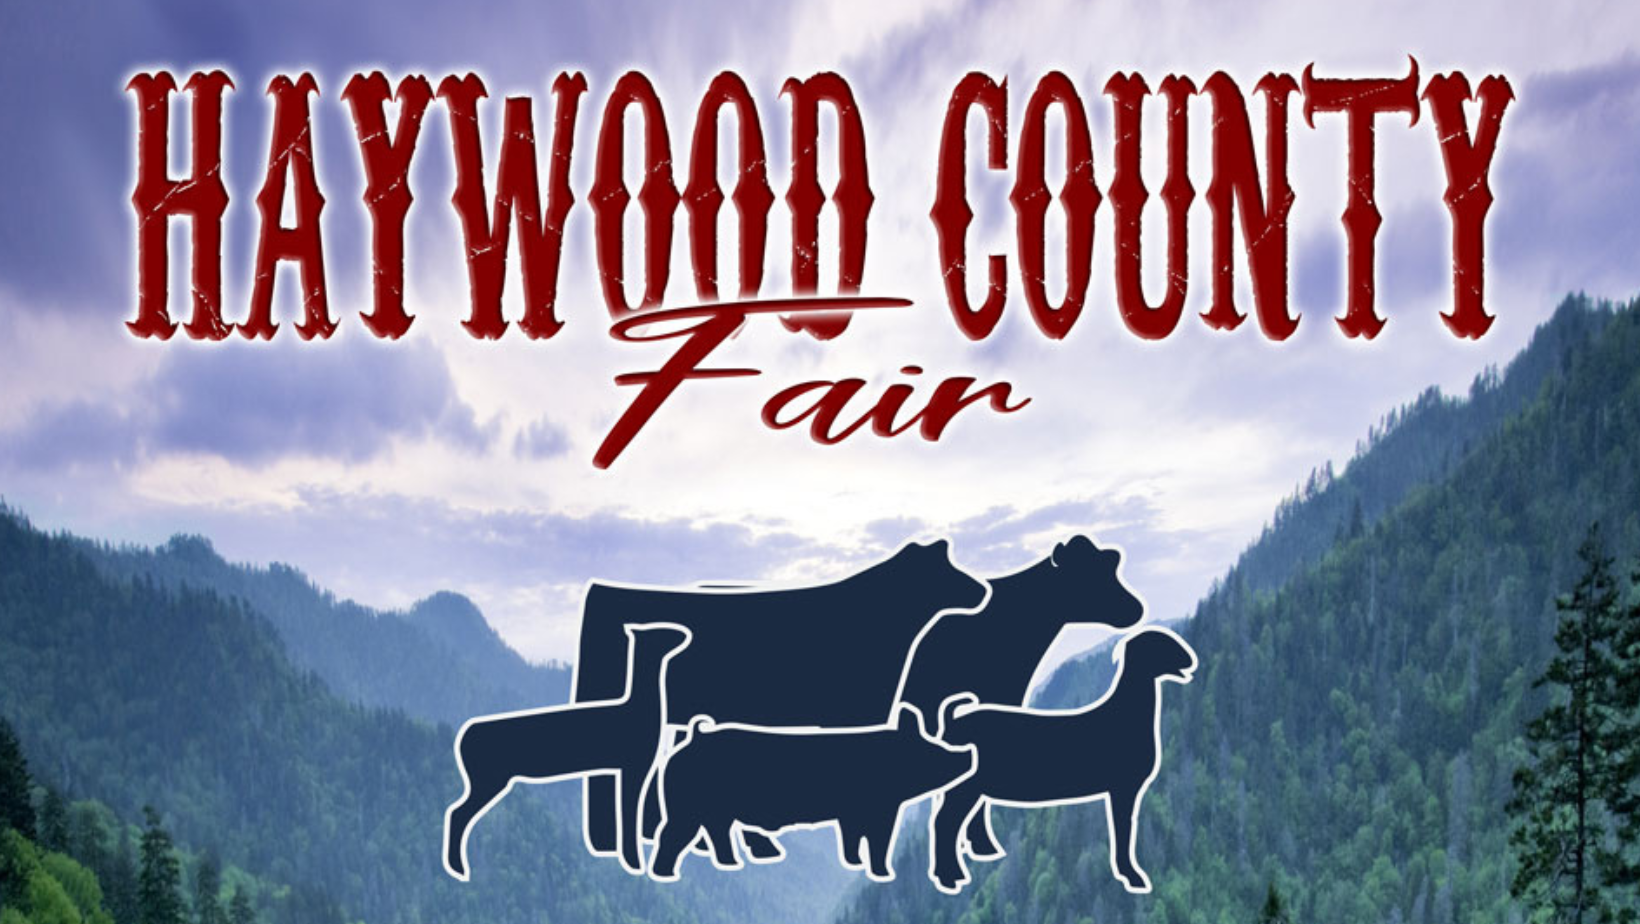 Haywood County Fair